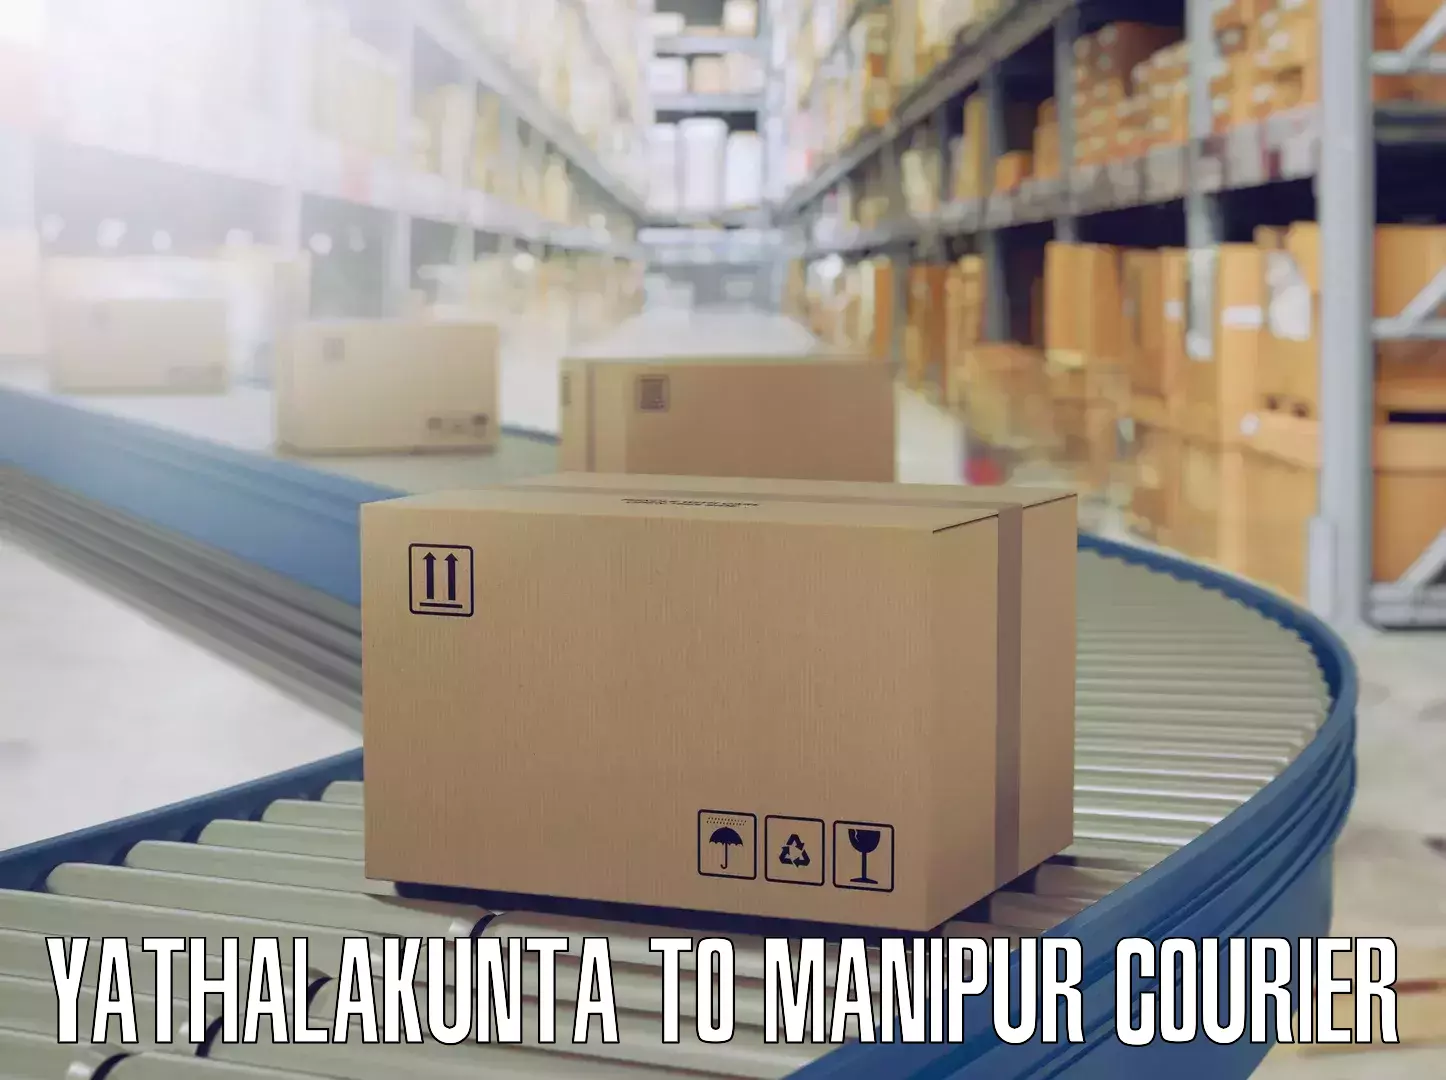 Skilled furniture transport Yathalakunta to Churachandpur